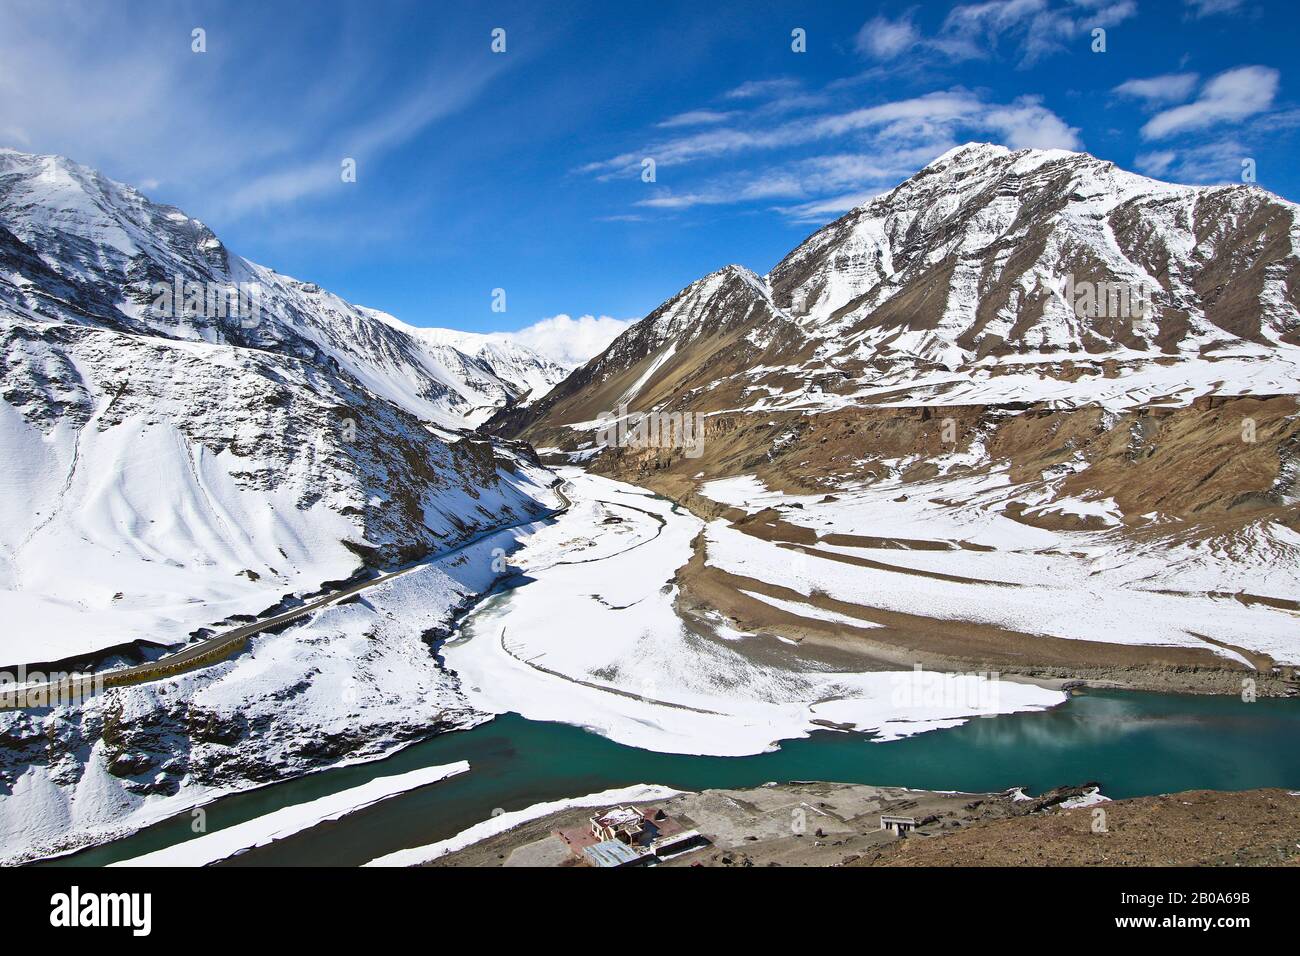 Der Treffpunkt der Flüsse Indus und Zanskar. Ladakh, Himalaya. Indien Stockfoto